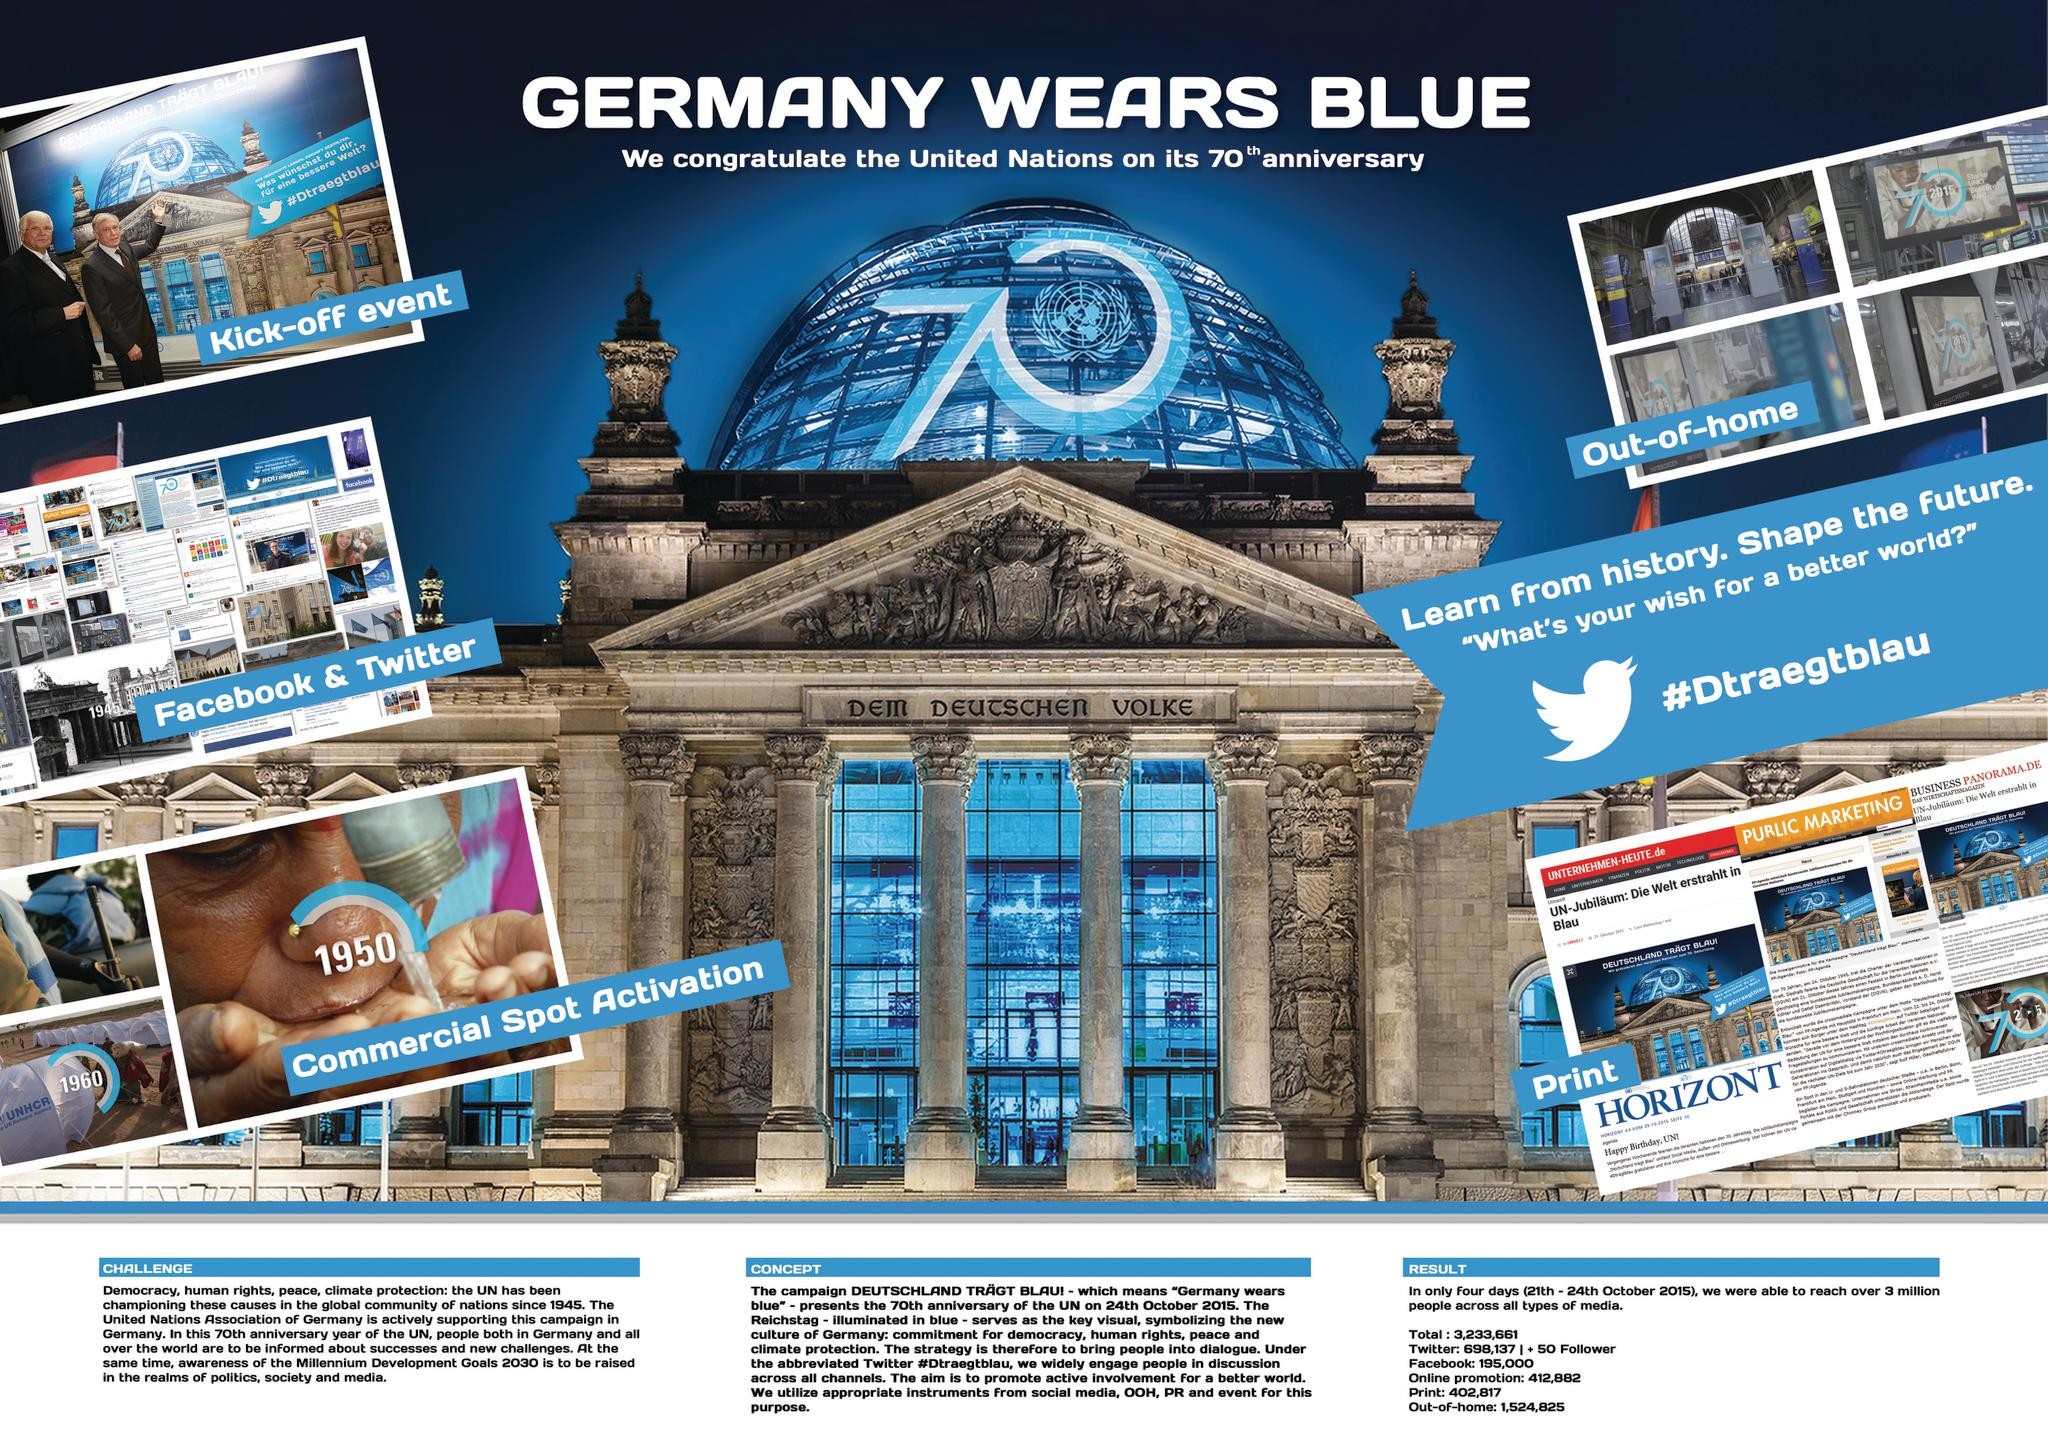 Germany wears blue!